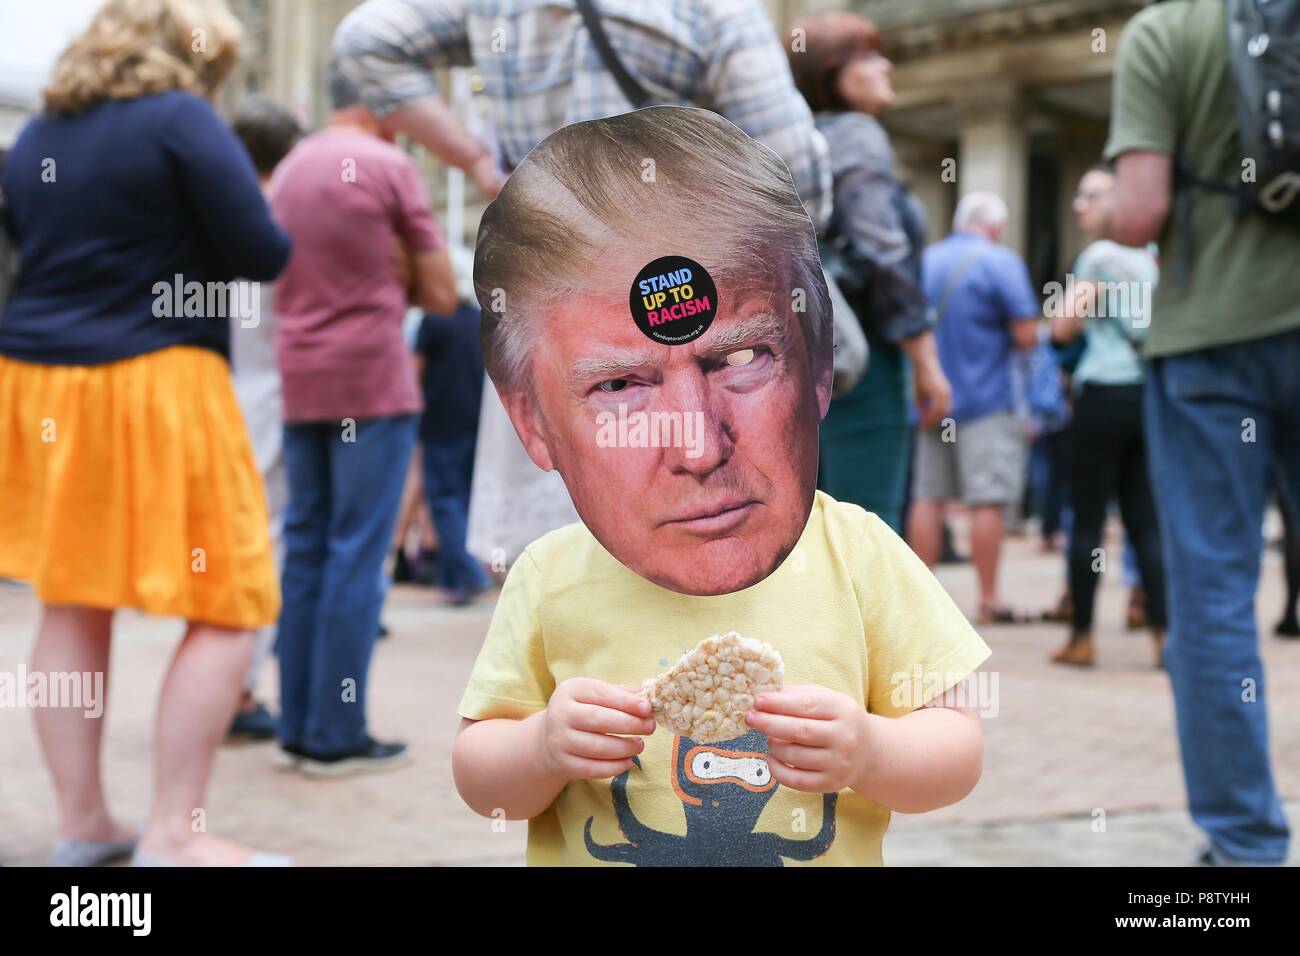 Birmingham, Reino Unido. El 13 de julio de 2018. Manifestación anti Trump, un niño llevaba una máscara, Trump Plaza Victoria, Birmingham. Peter Lopeman/Alamy Live News Foto de stock